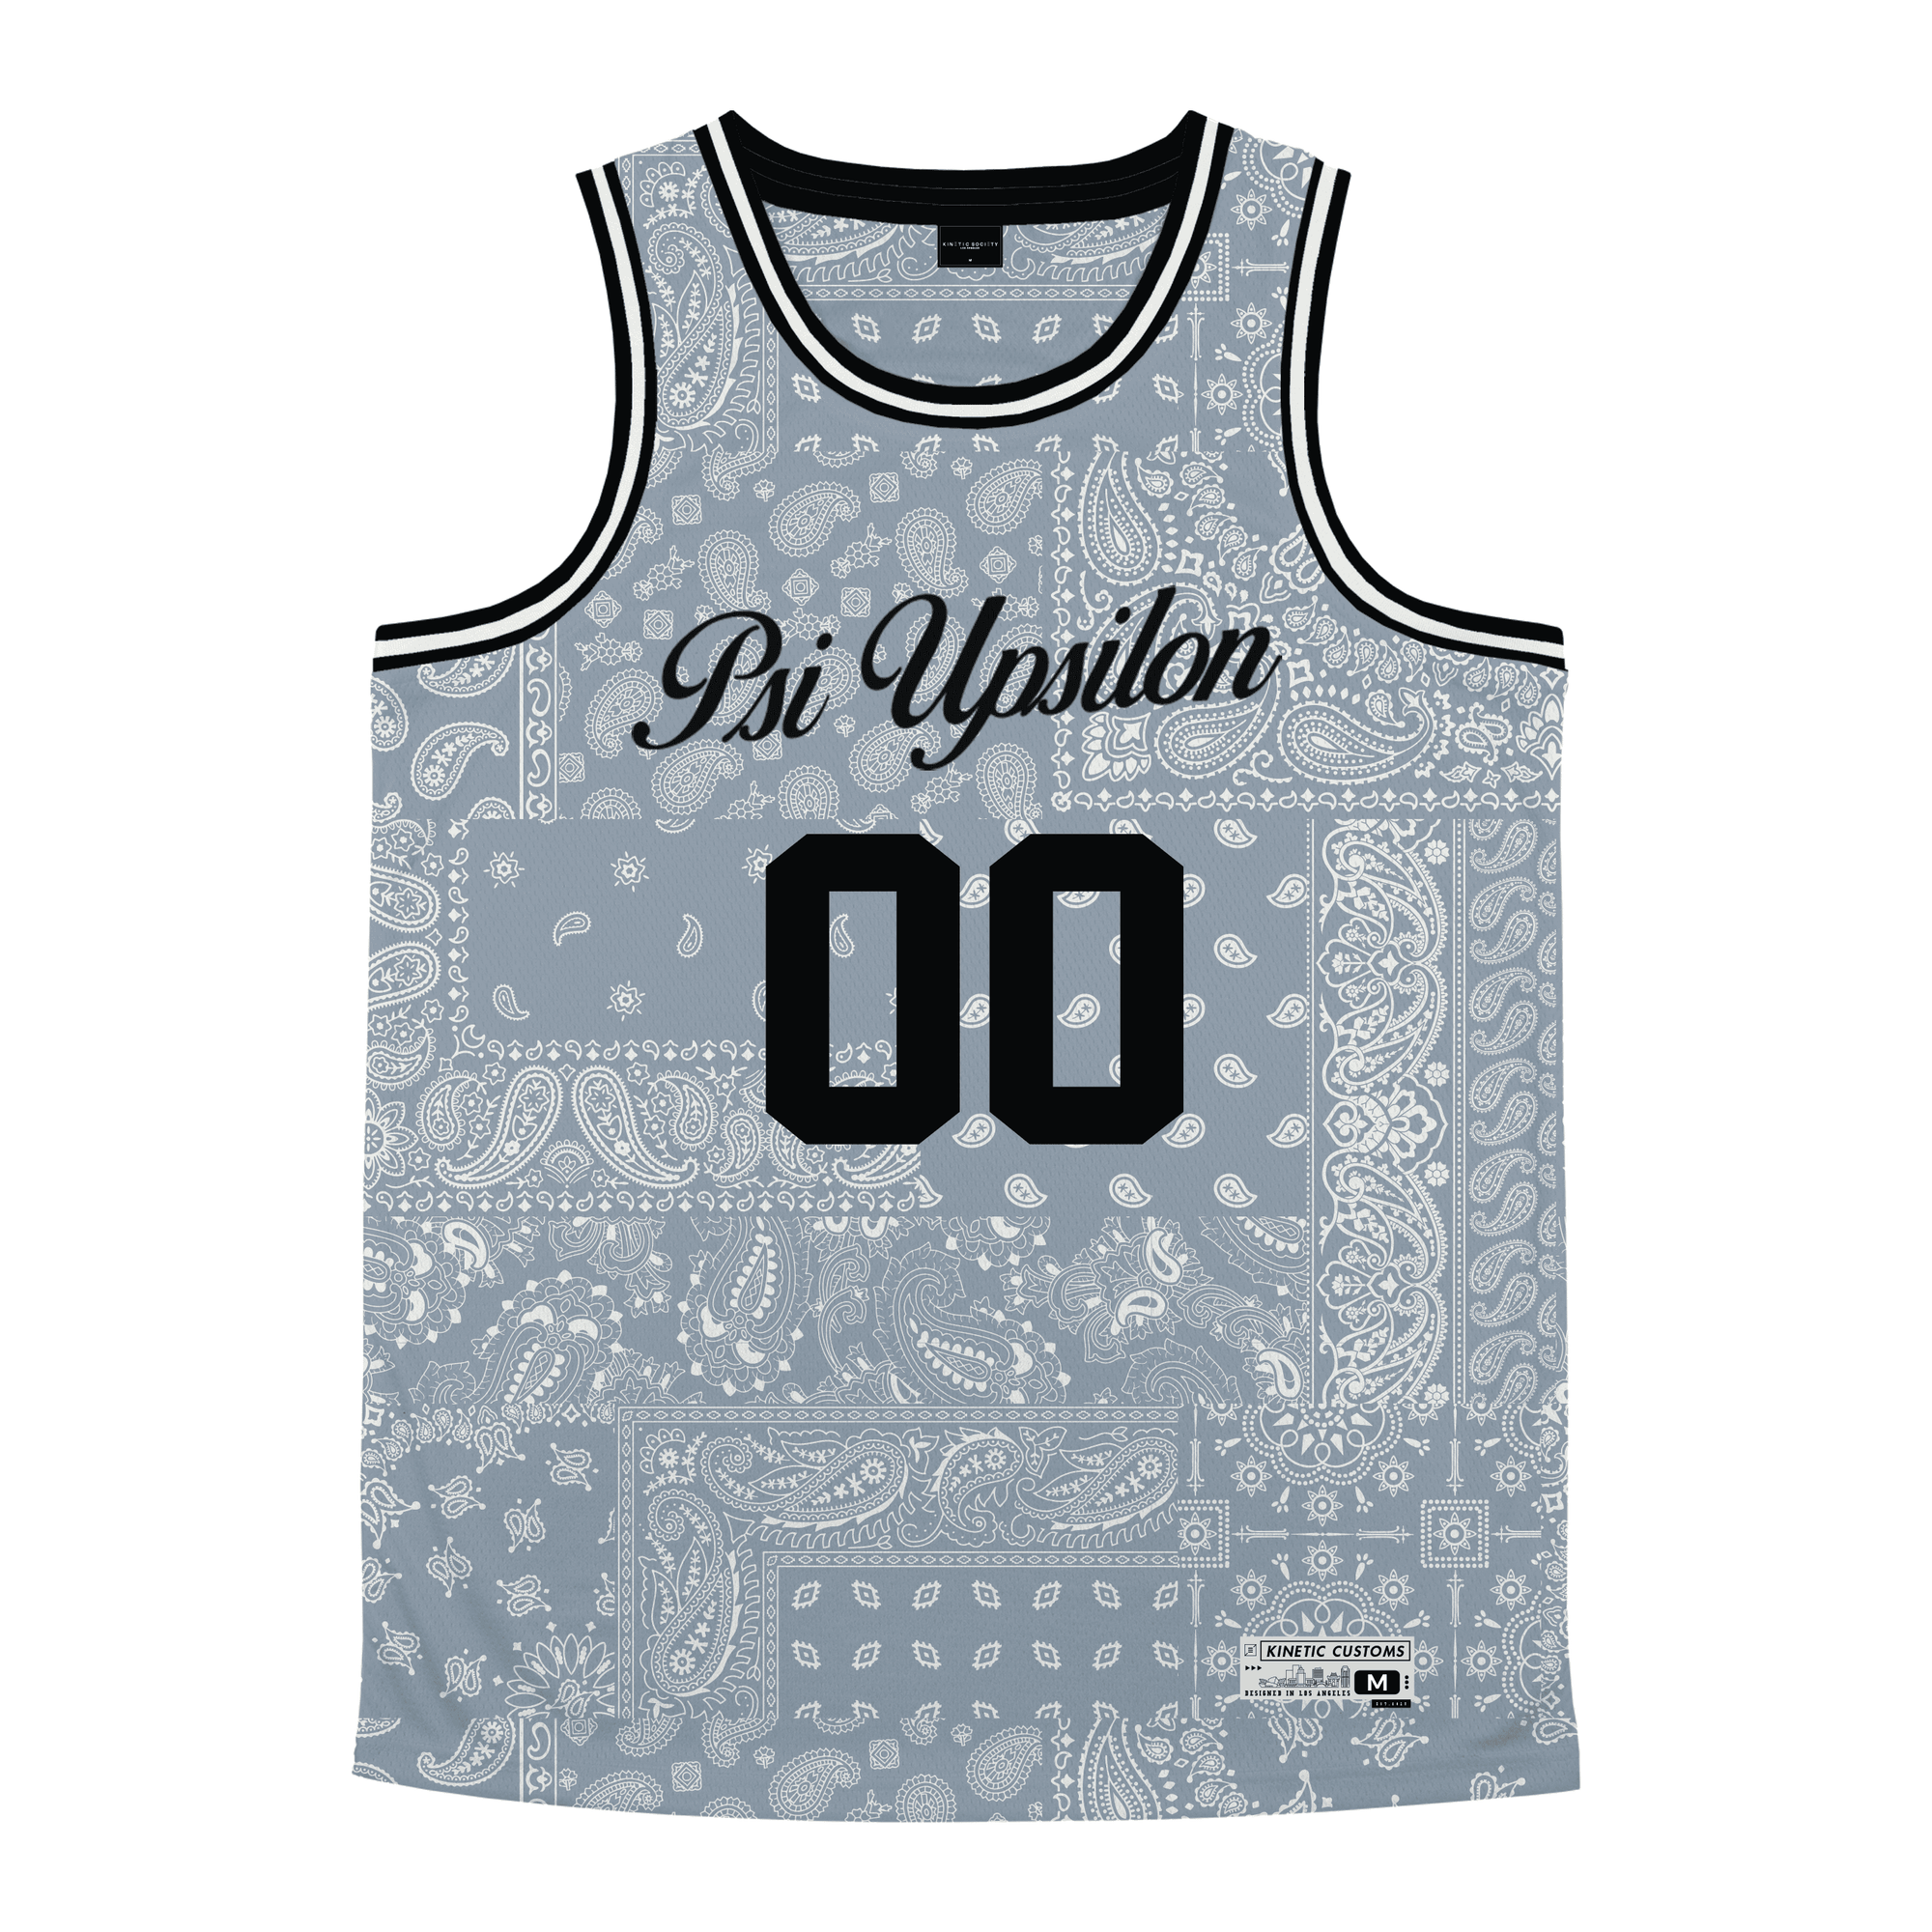 Psi Upsilon - Slate Bandana - Basketball Jersey